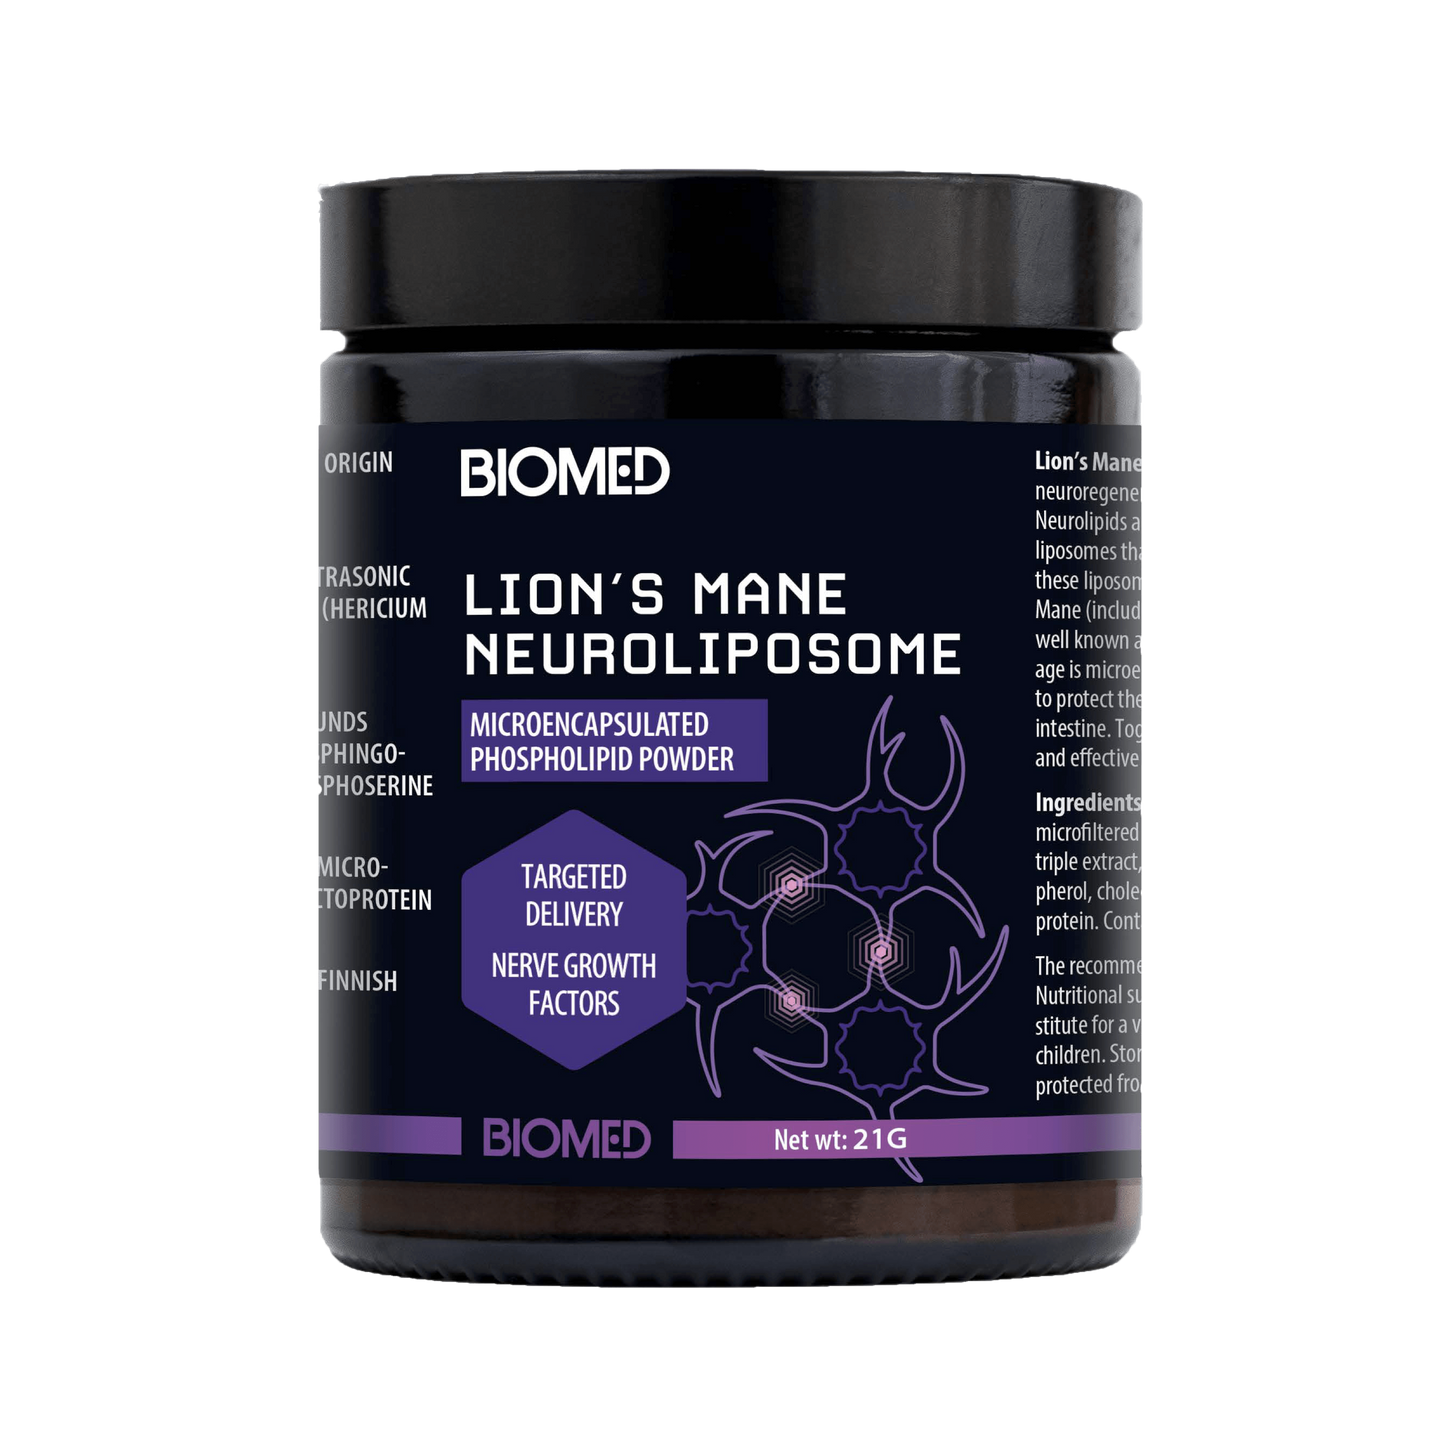 Biomed Lion’s Mane Neuroliposome